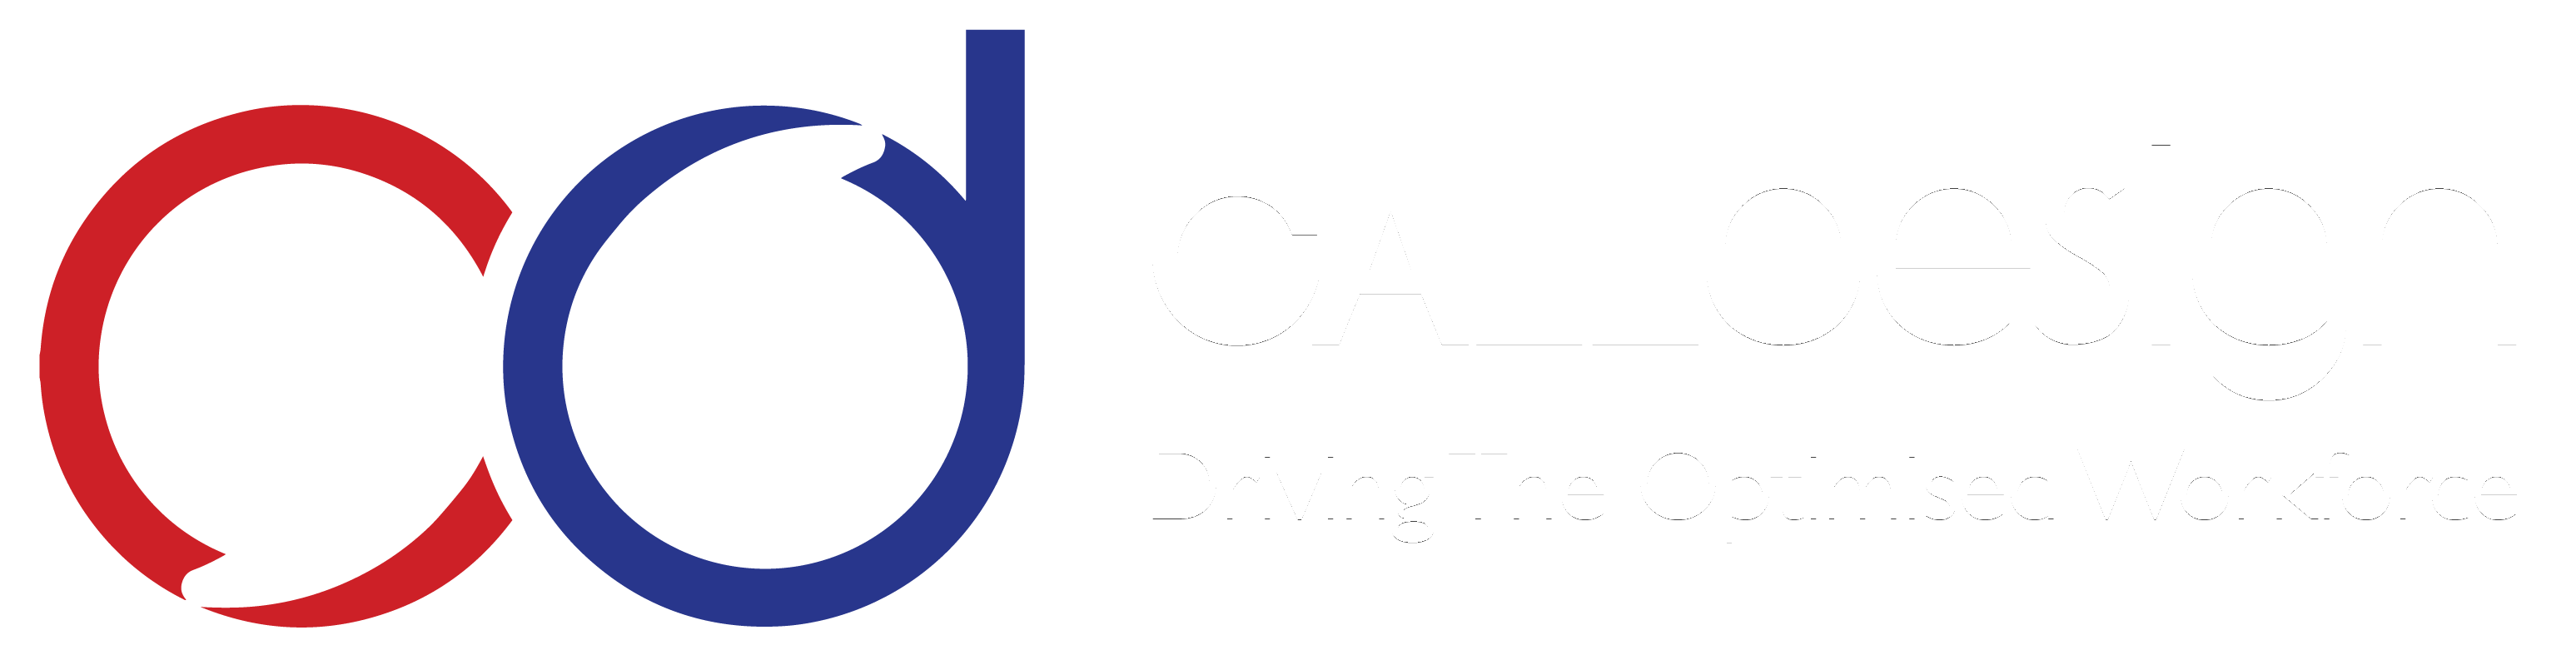 call-design-logo